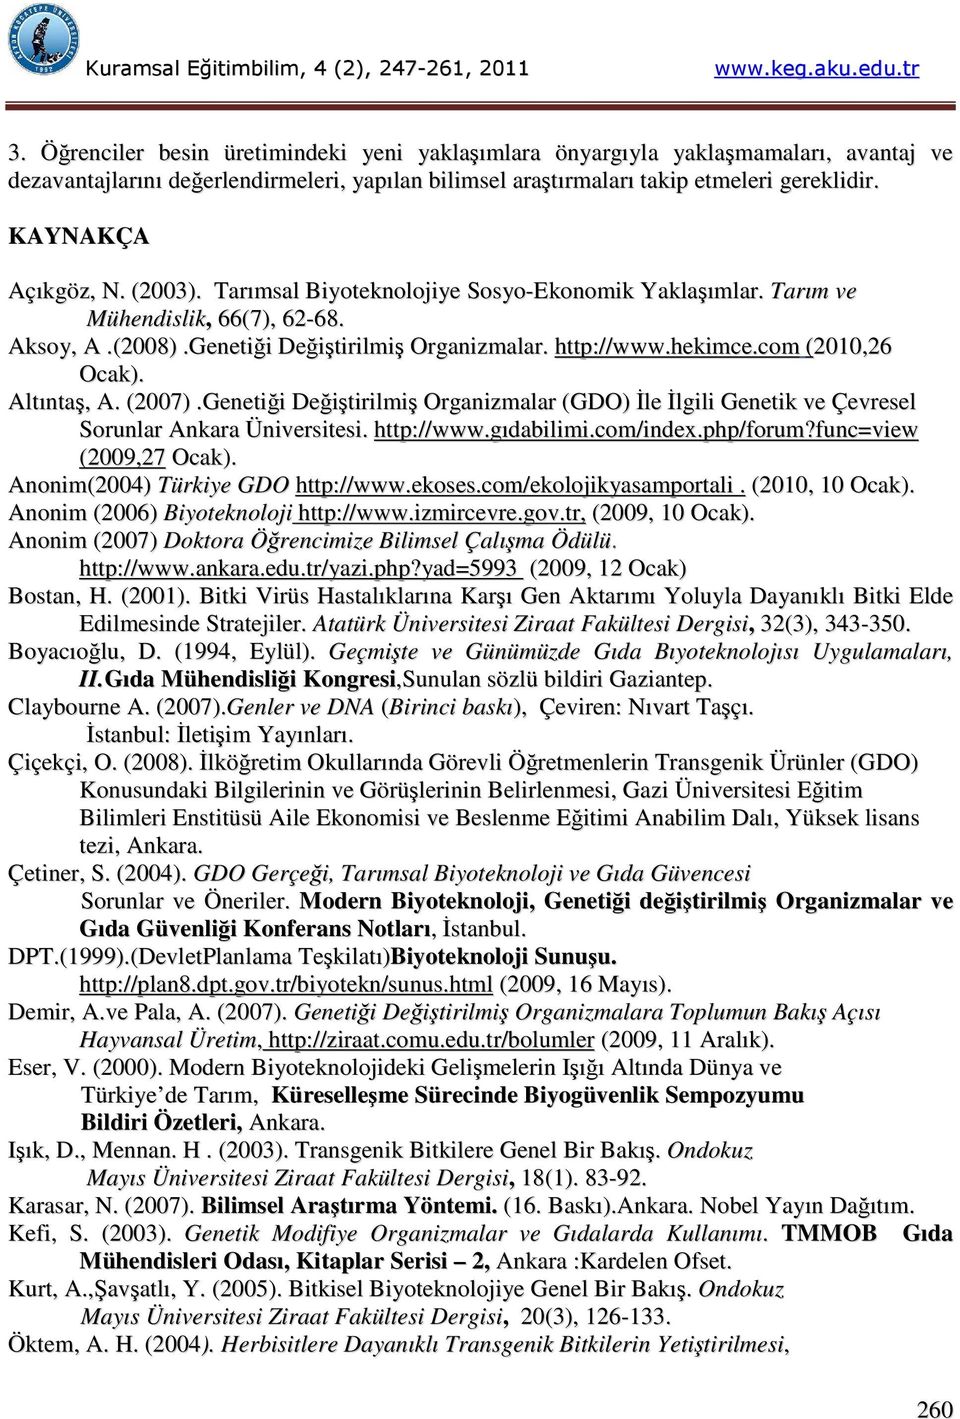 com (2010,26 Ocak). Altıntaş, A. (2007).Genetiği Değiştirilmiş Organizmalar (GDO) İle İlgili Genetik ve Çevresel Sorunlar Ankara Üniversitesi. http://www.gıdabilimi.com/index.php/forum?